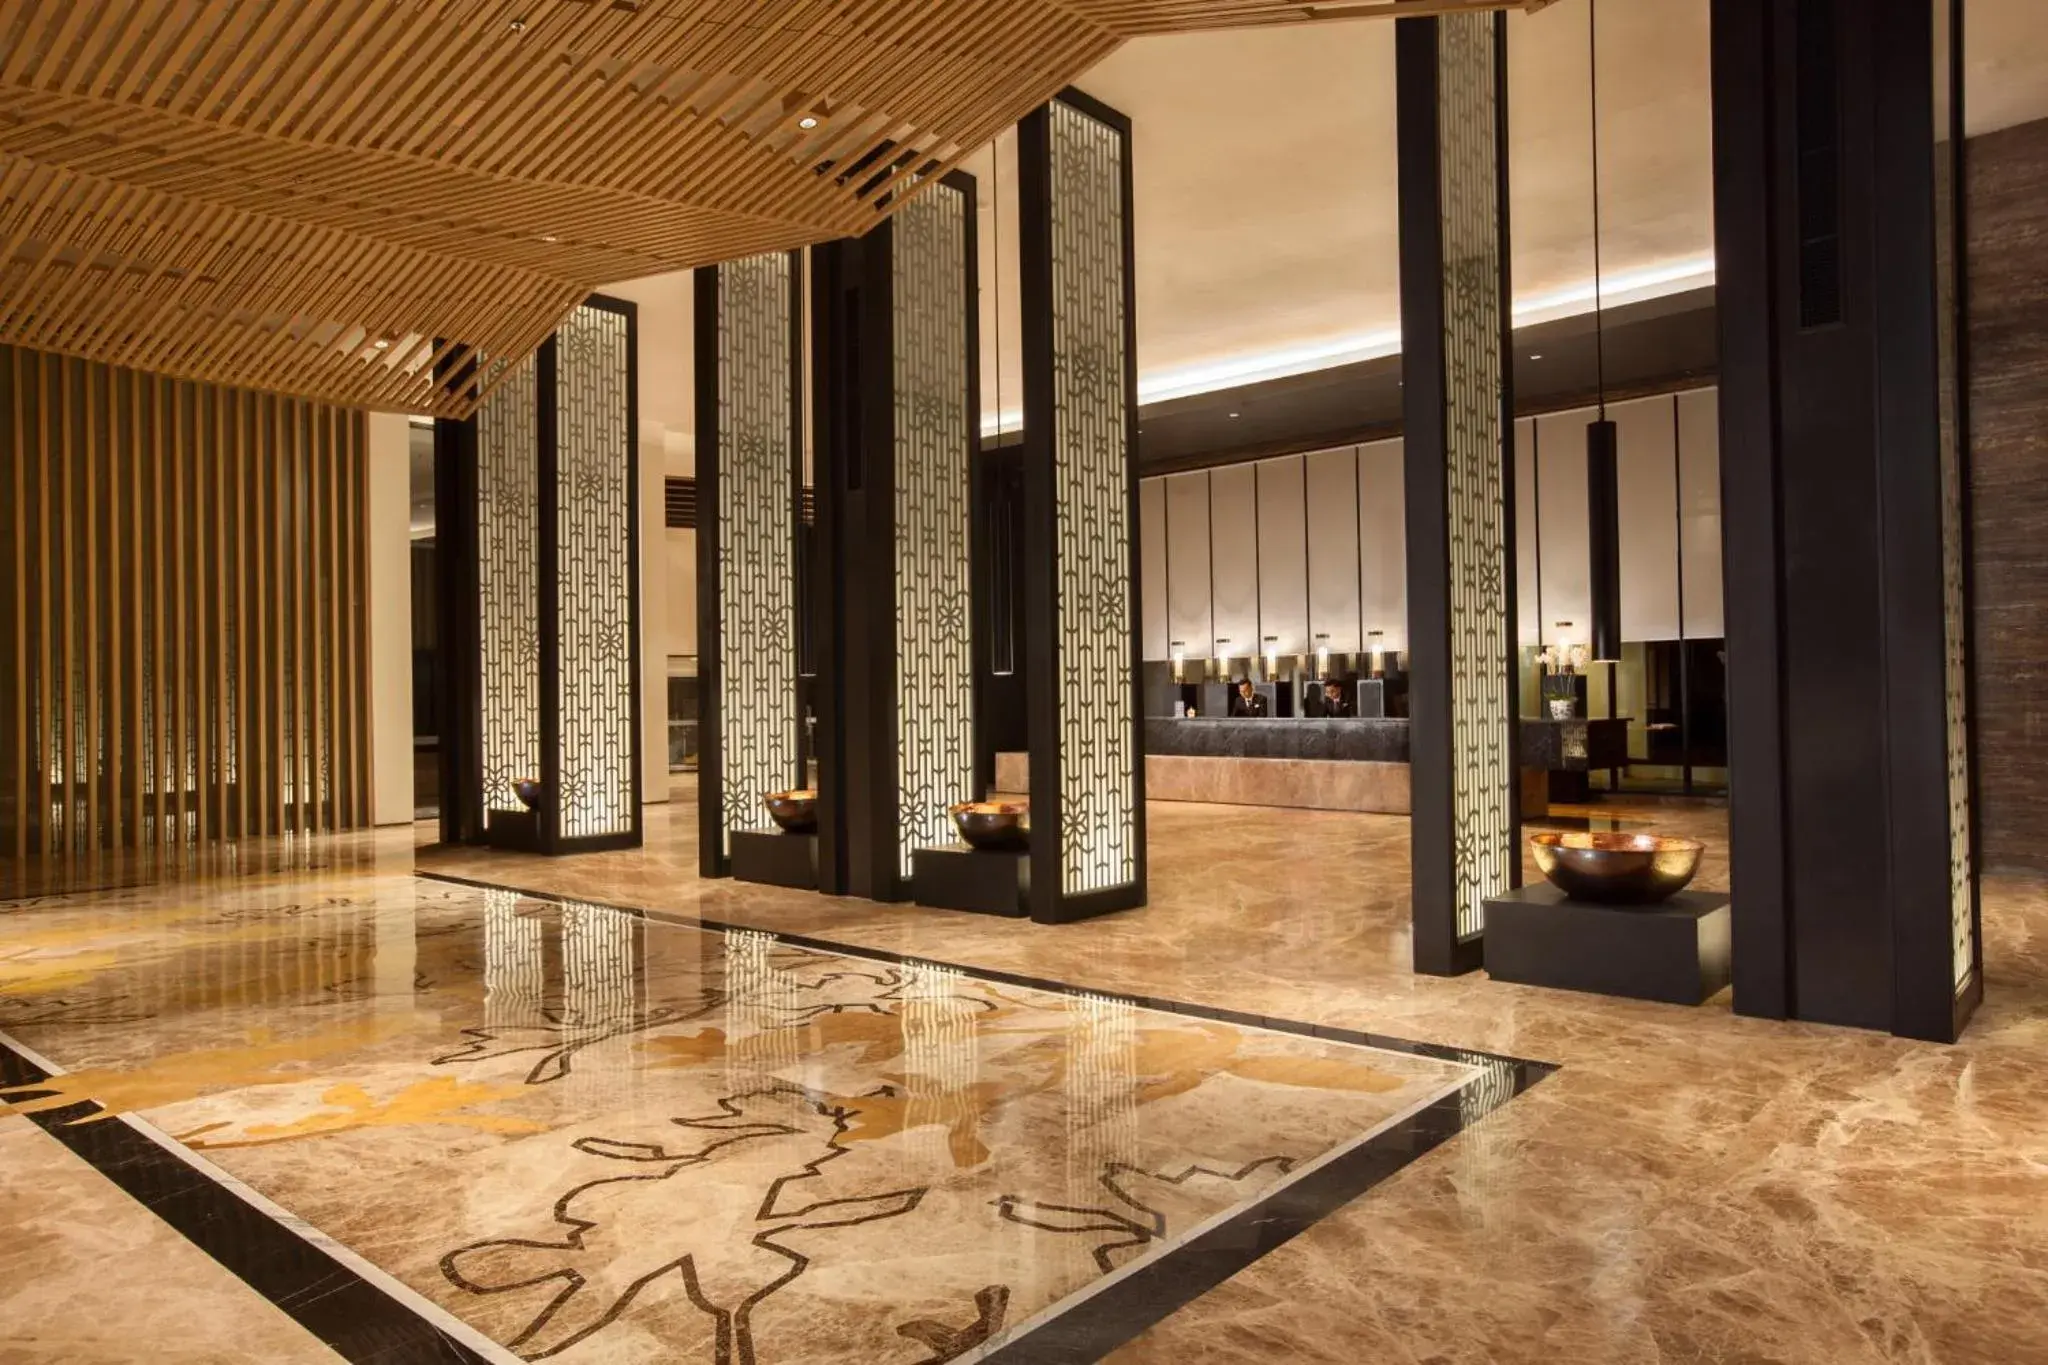 Lobby or reception in Hotel Santika Premiere Bandara Palembang